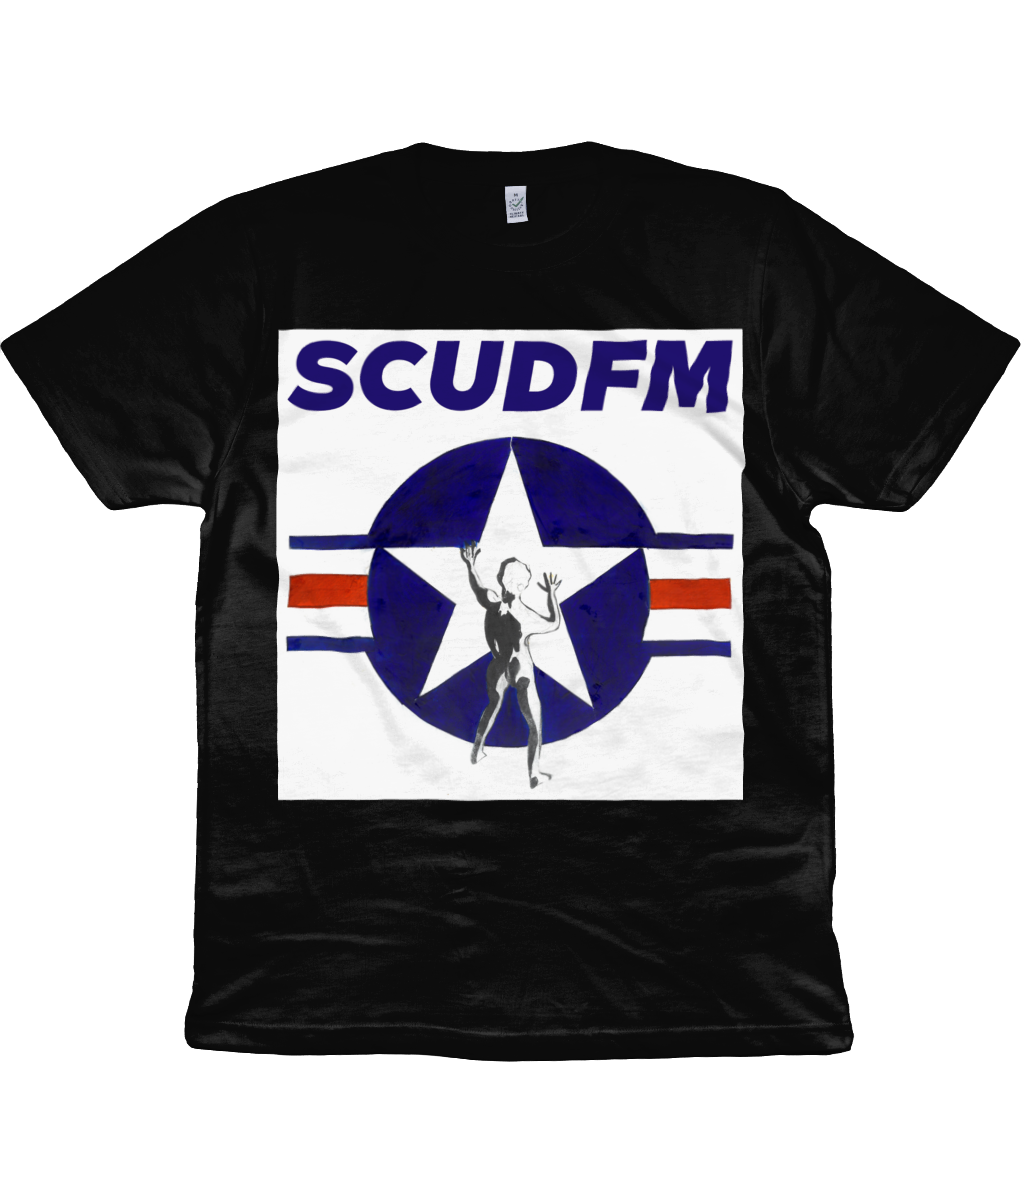 SCUD FM